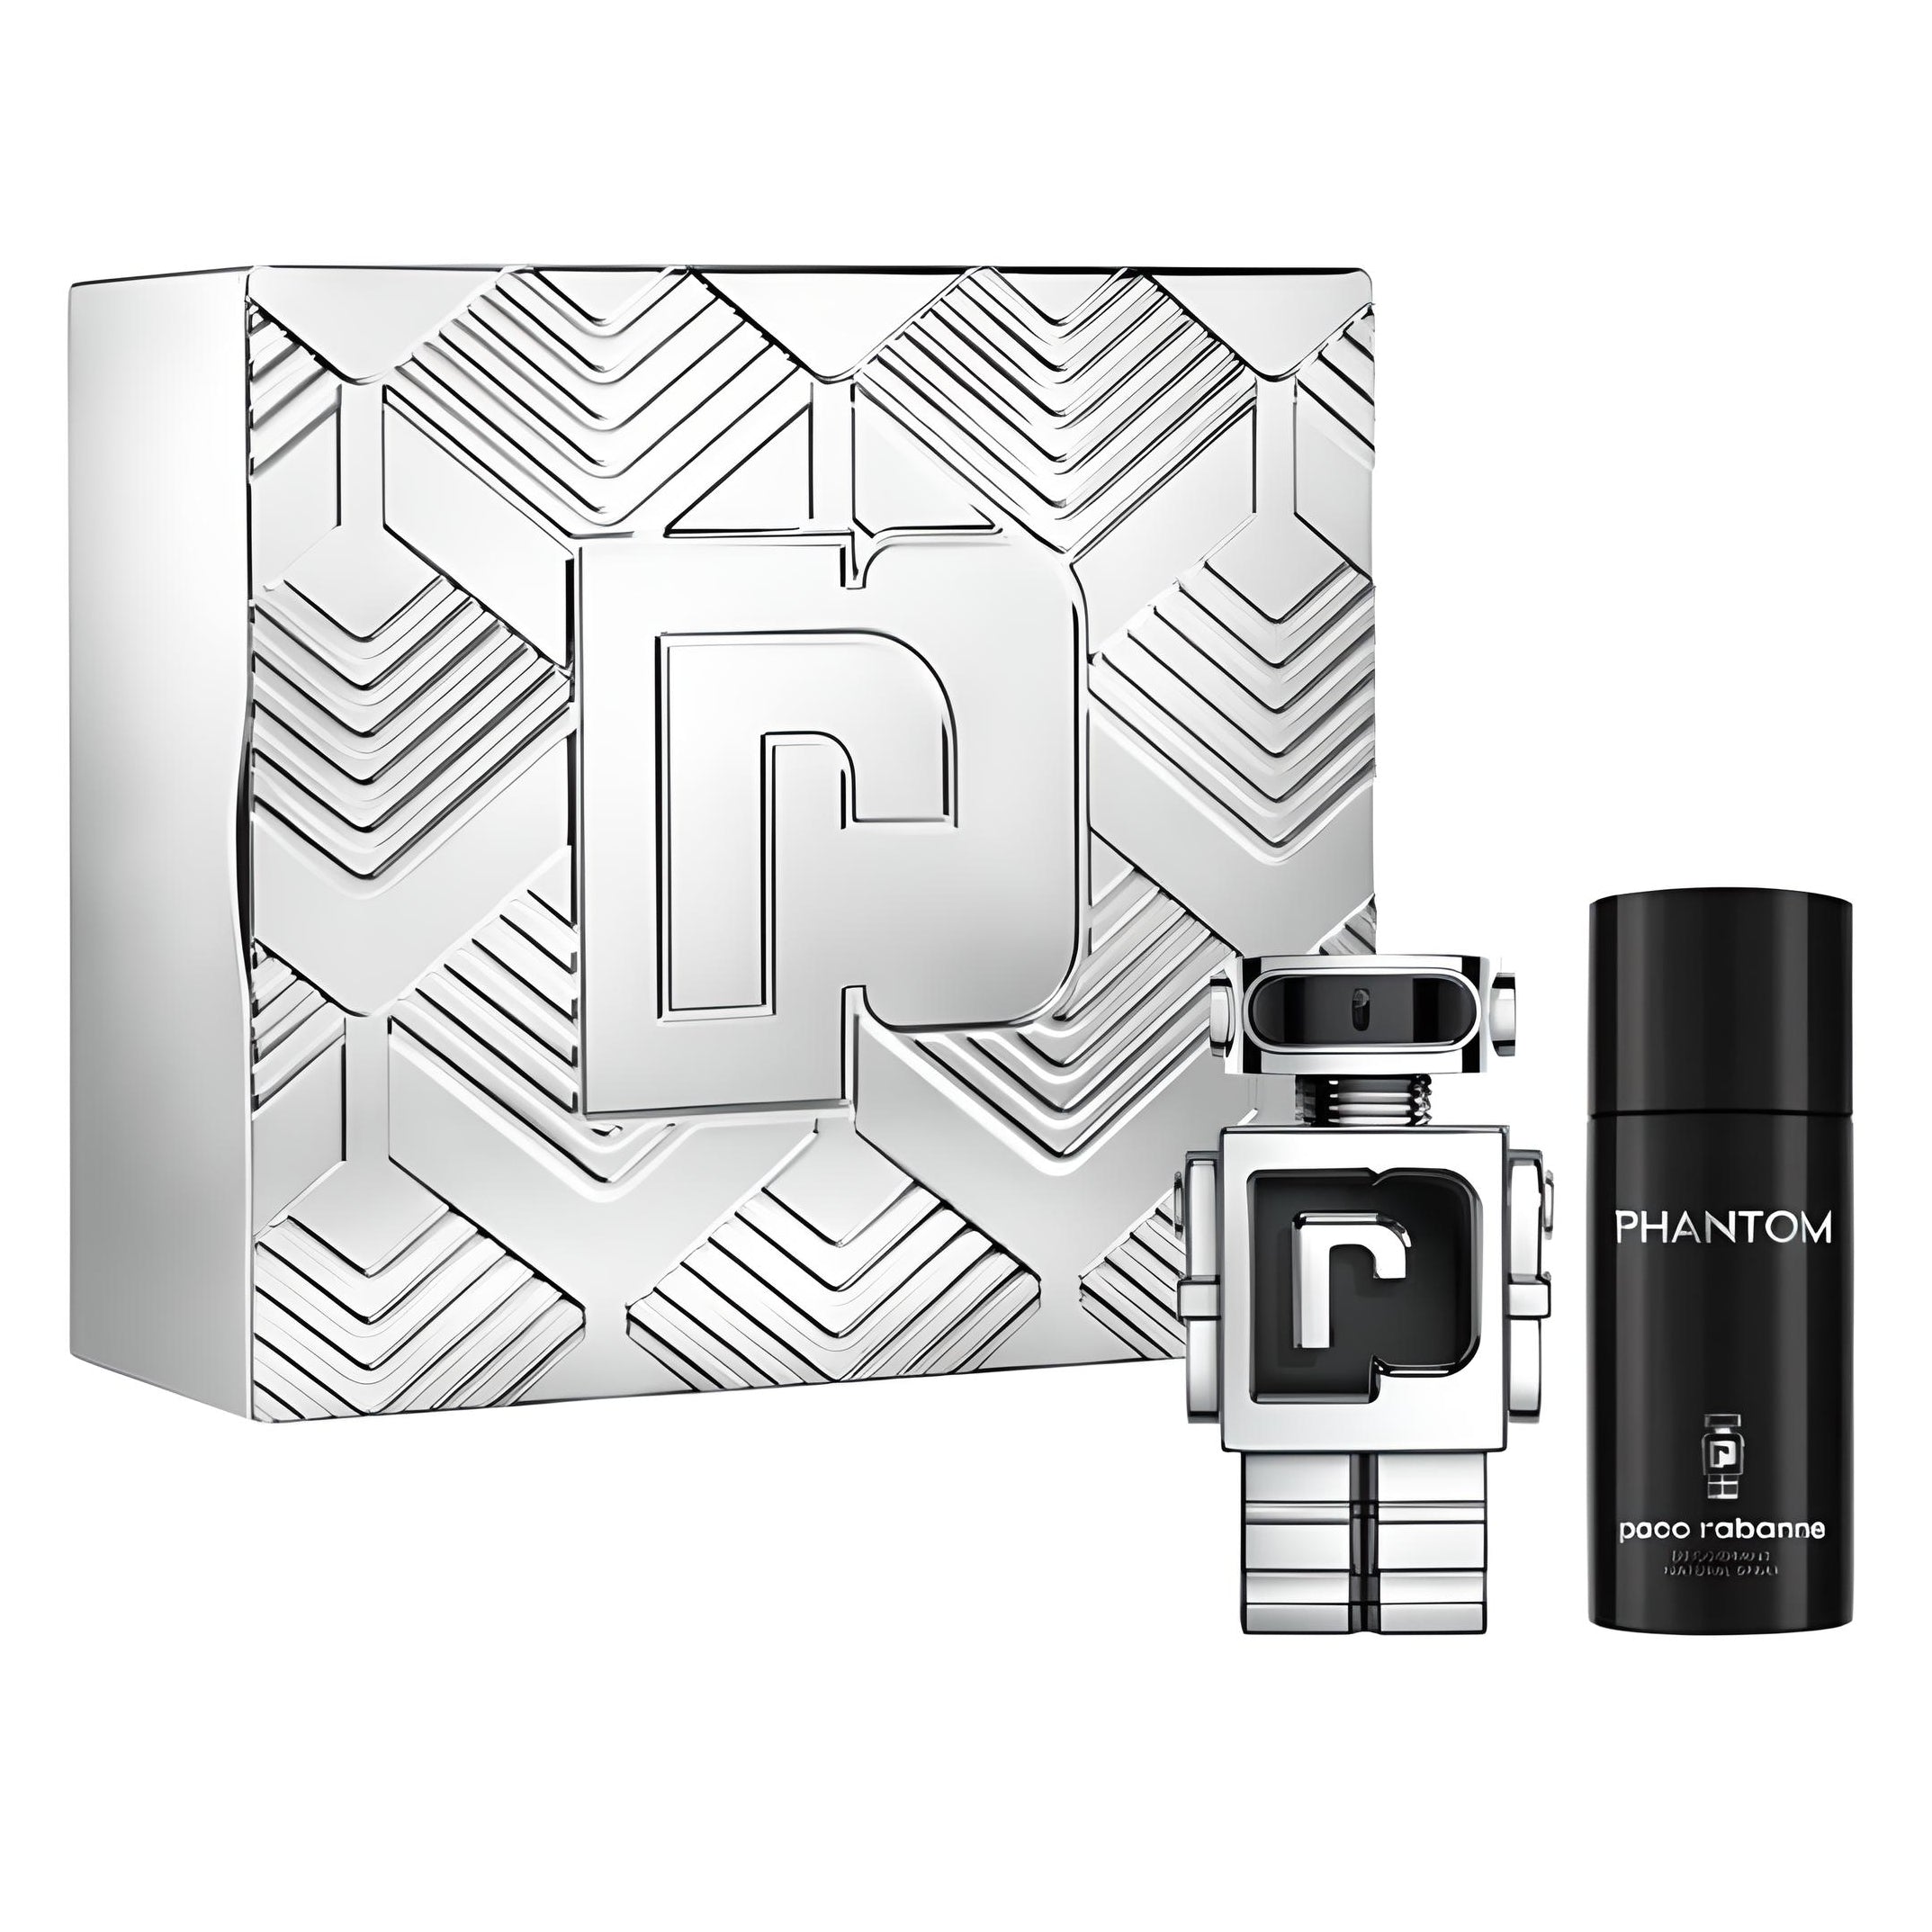 PACO RABANNE Phantom Set Geschenkset Parfum-Set PACO RABANNE   